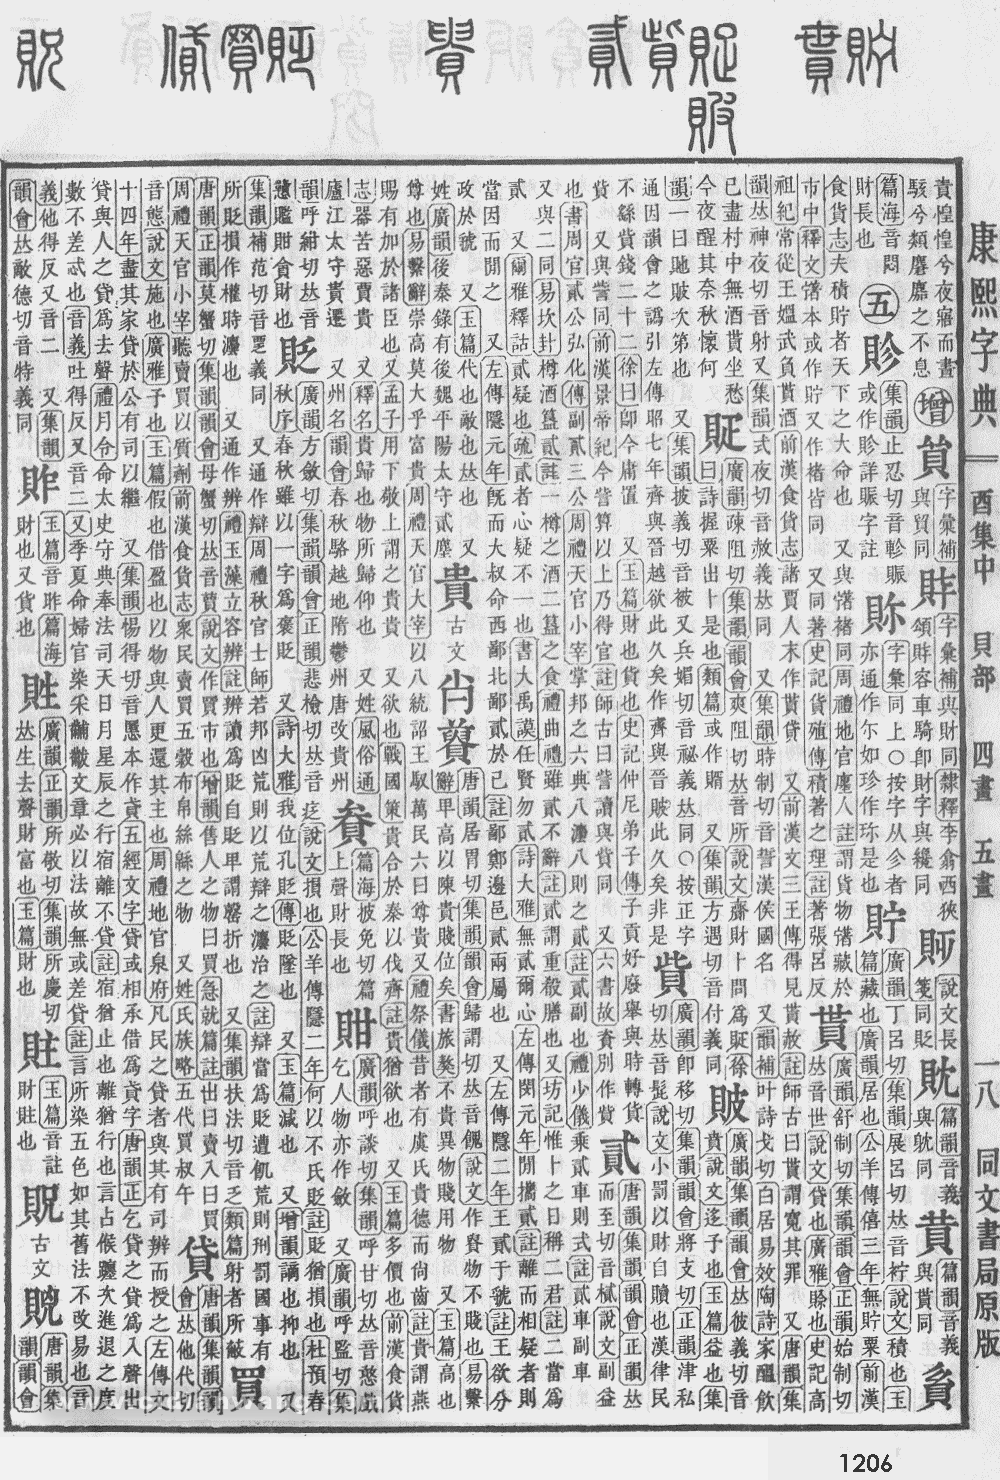 康熙字典掃描版第1206頁